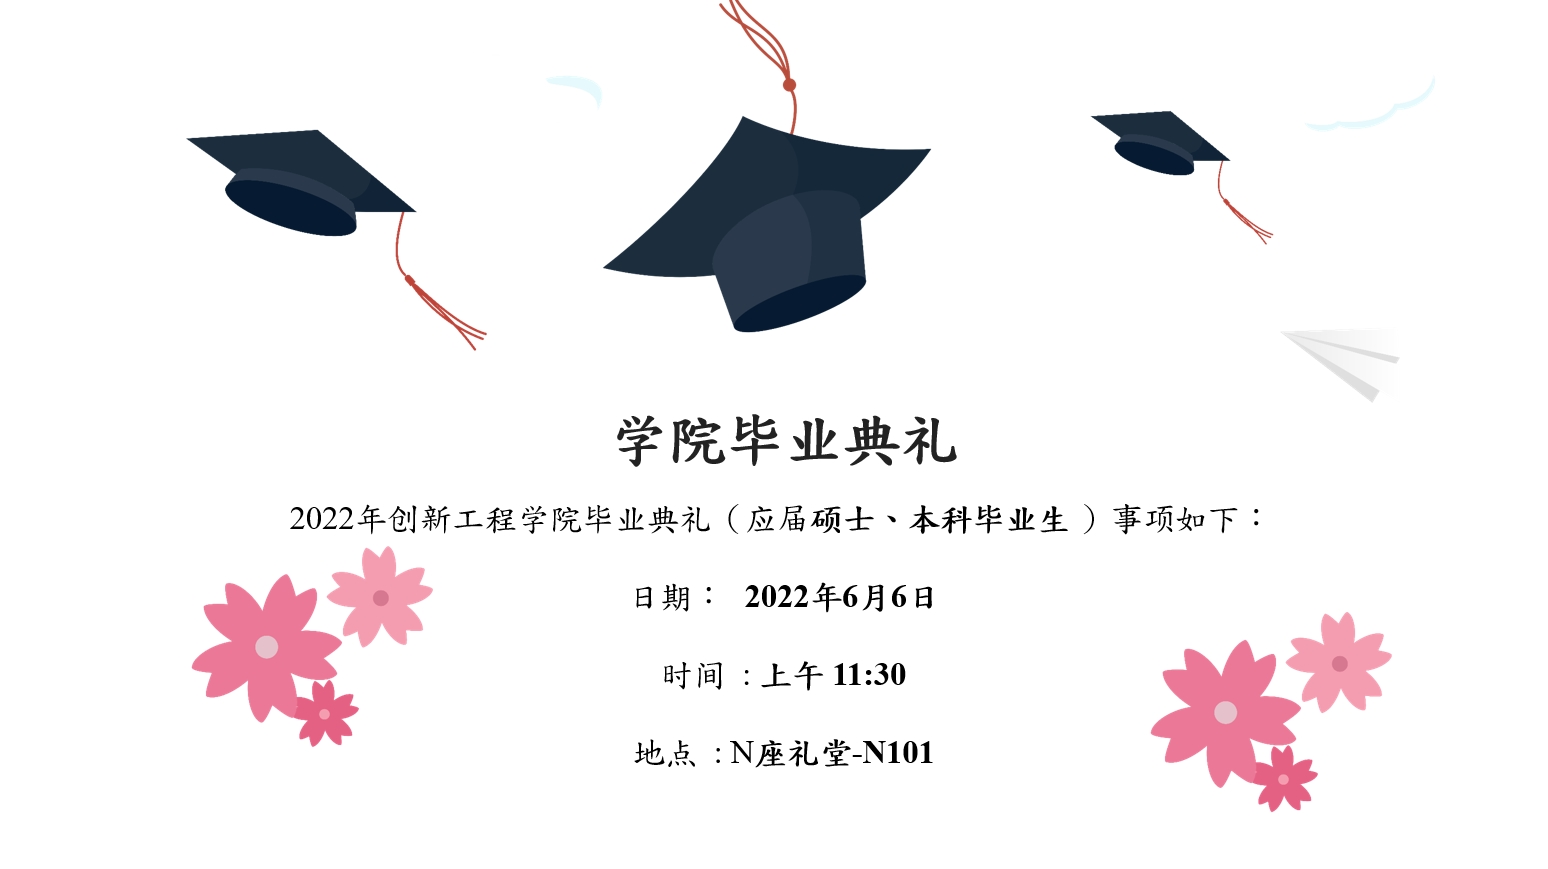 Graduation2022 cn